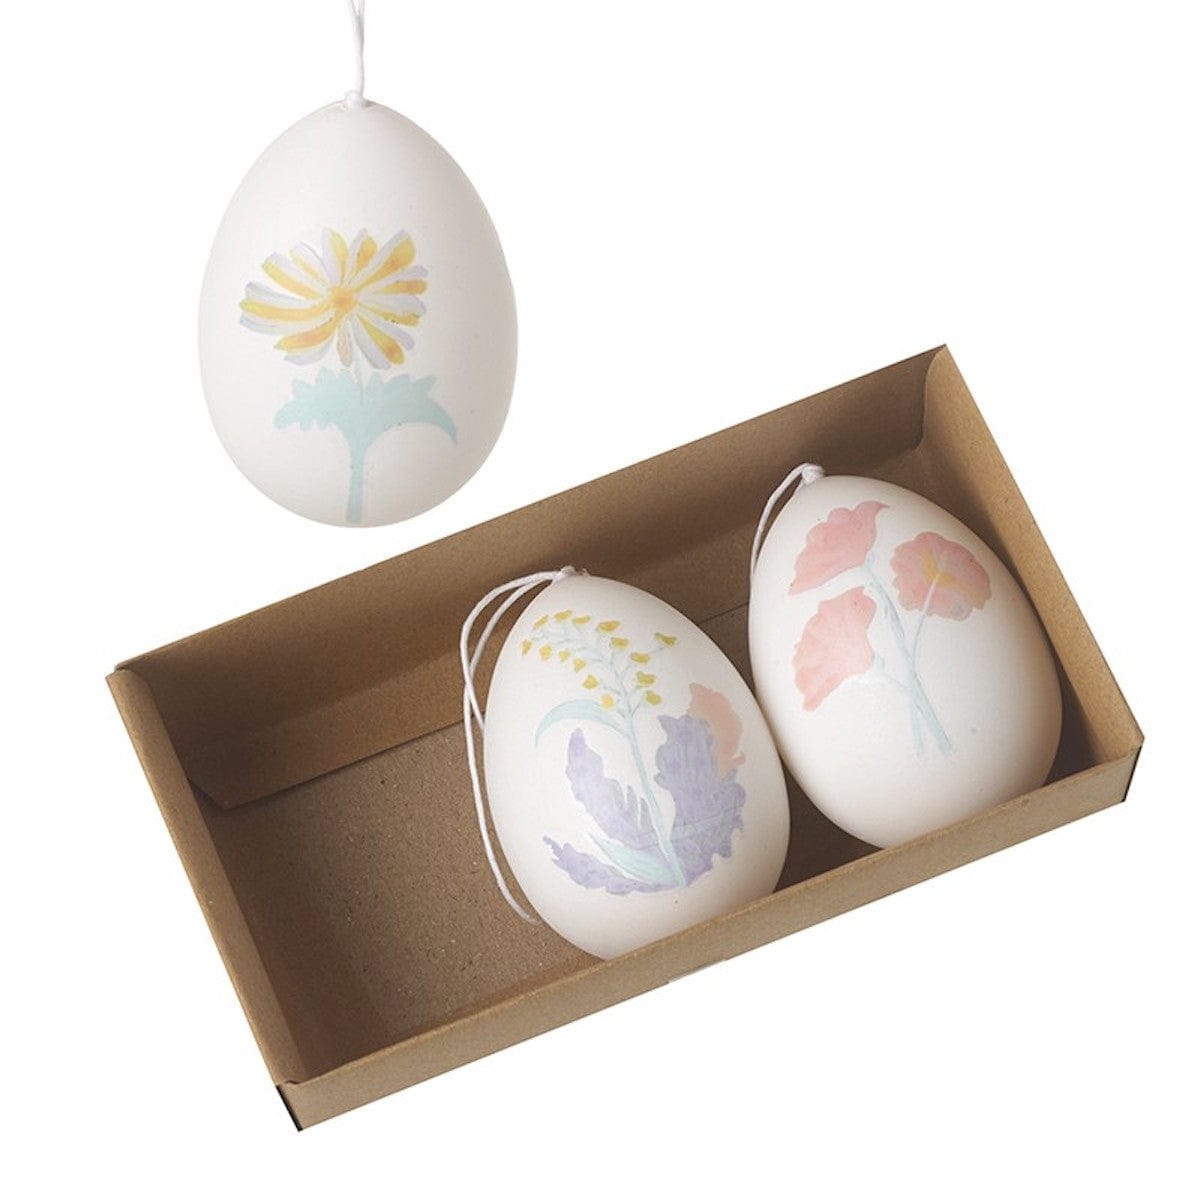 Heaven Sends Easter Decorations Set of 3 Floral Easter Egg Decorations